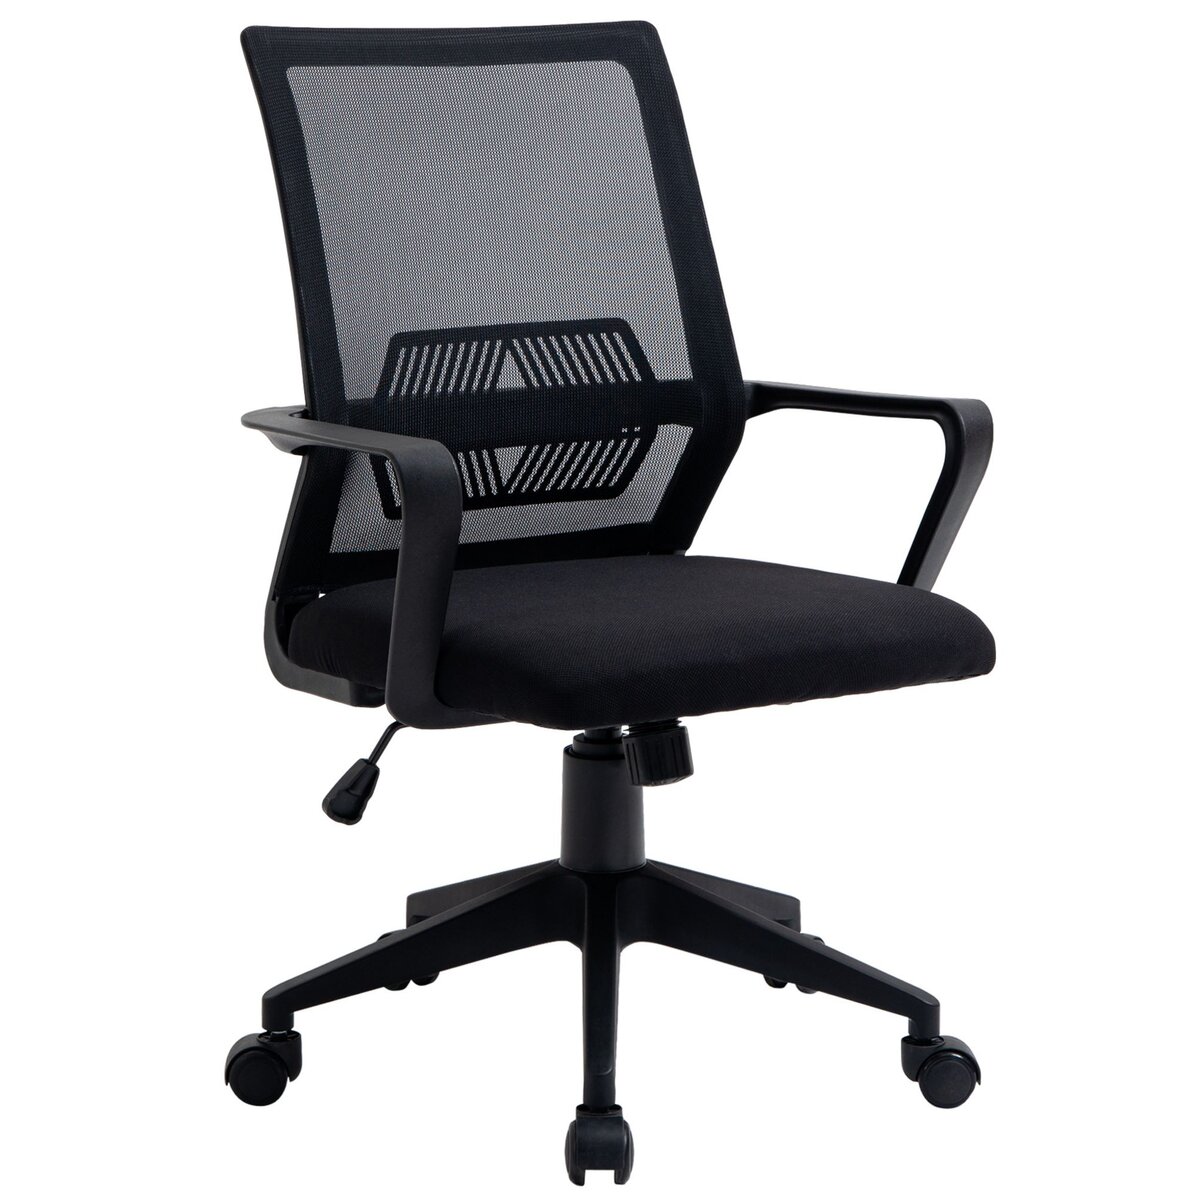 VINSETTO Vinsetto chaise de bureau ergonomique réglable pivotante 360° avec fonction à bascule verrouillable maille polyester noir